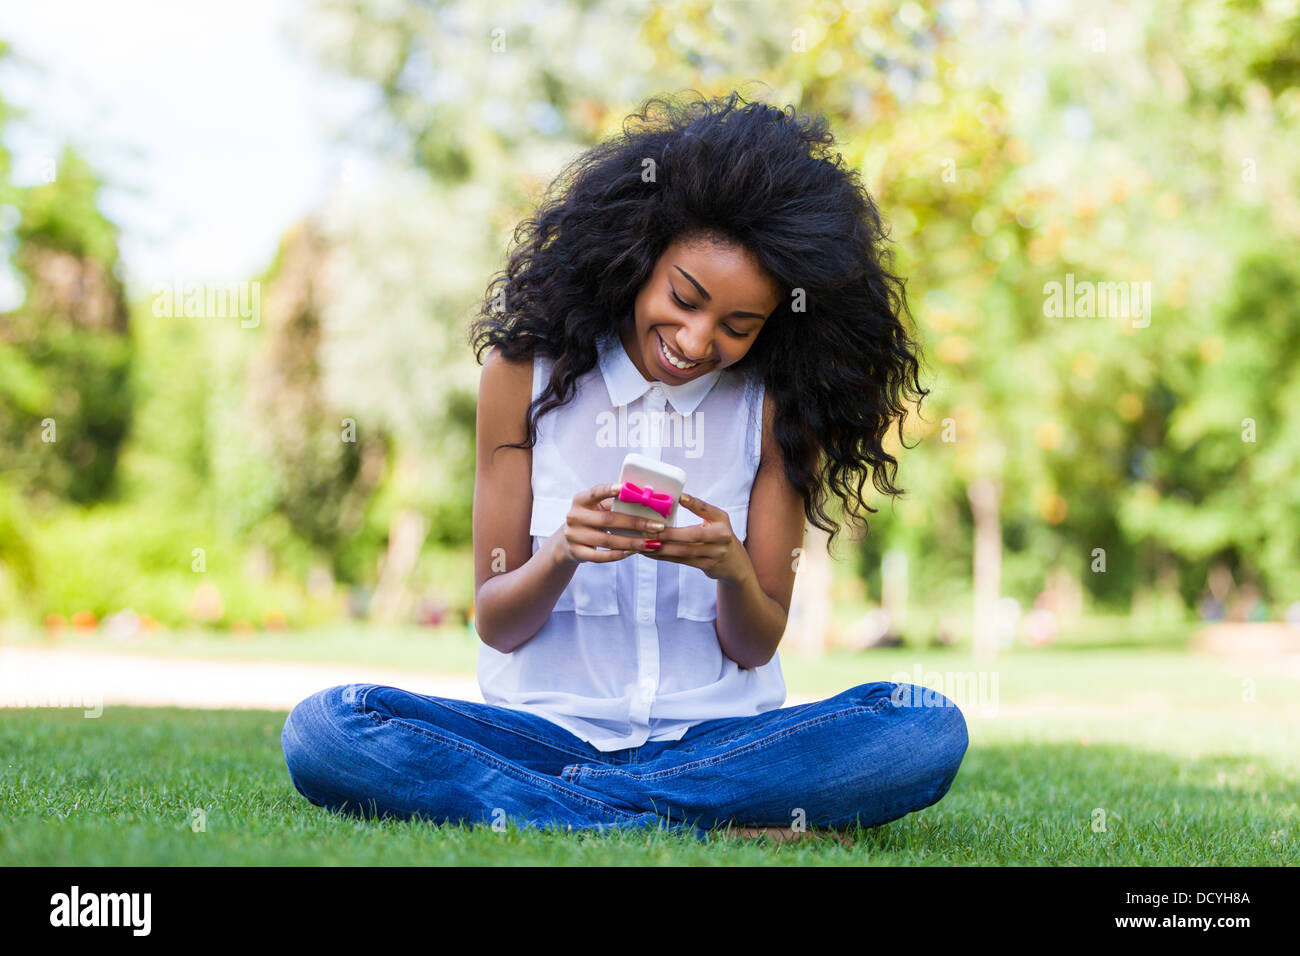 Adolescente sorridente ragazza nera utilizzando un telefono, seduto sull'erba - popolo africano Foto Stock